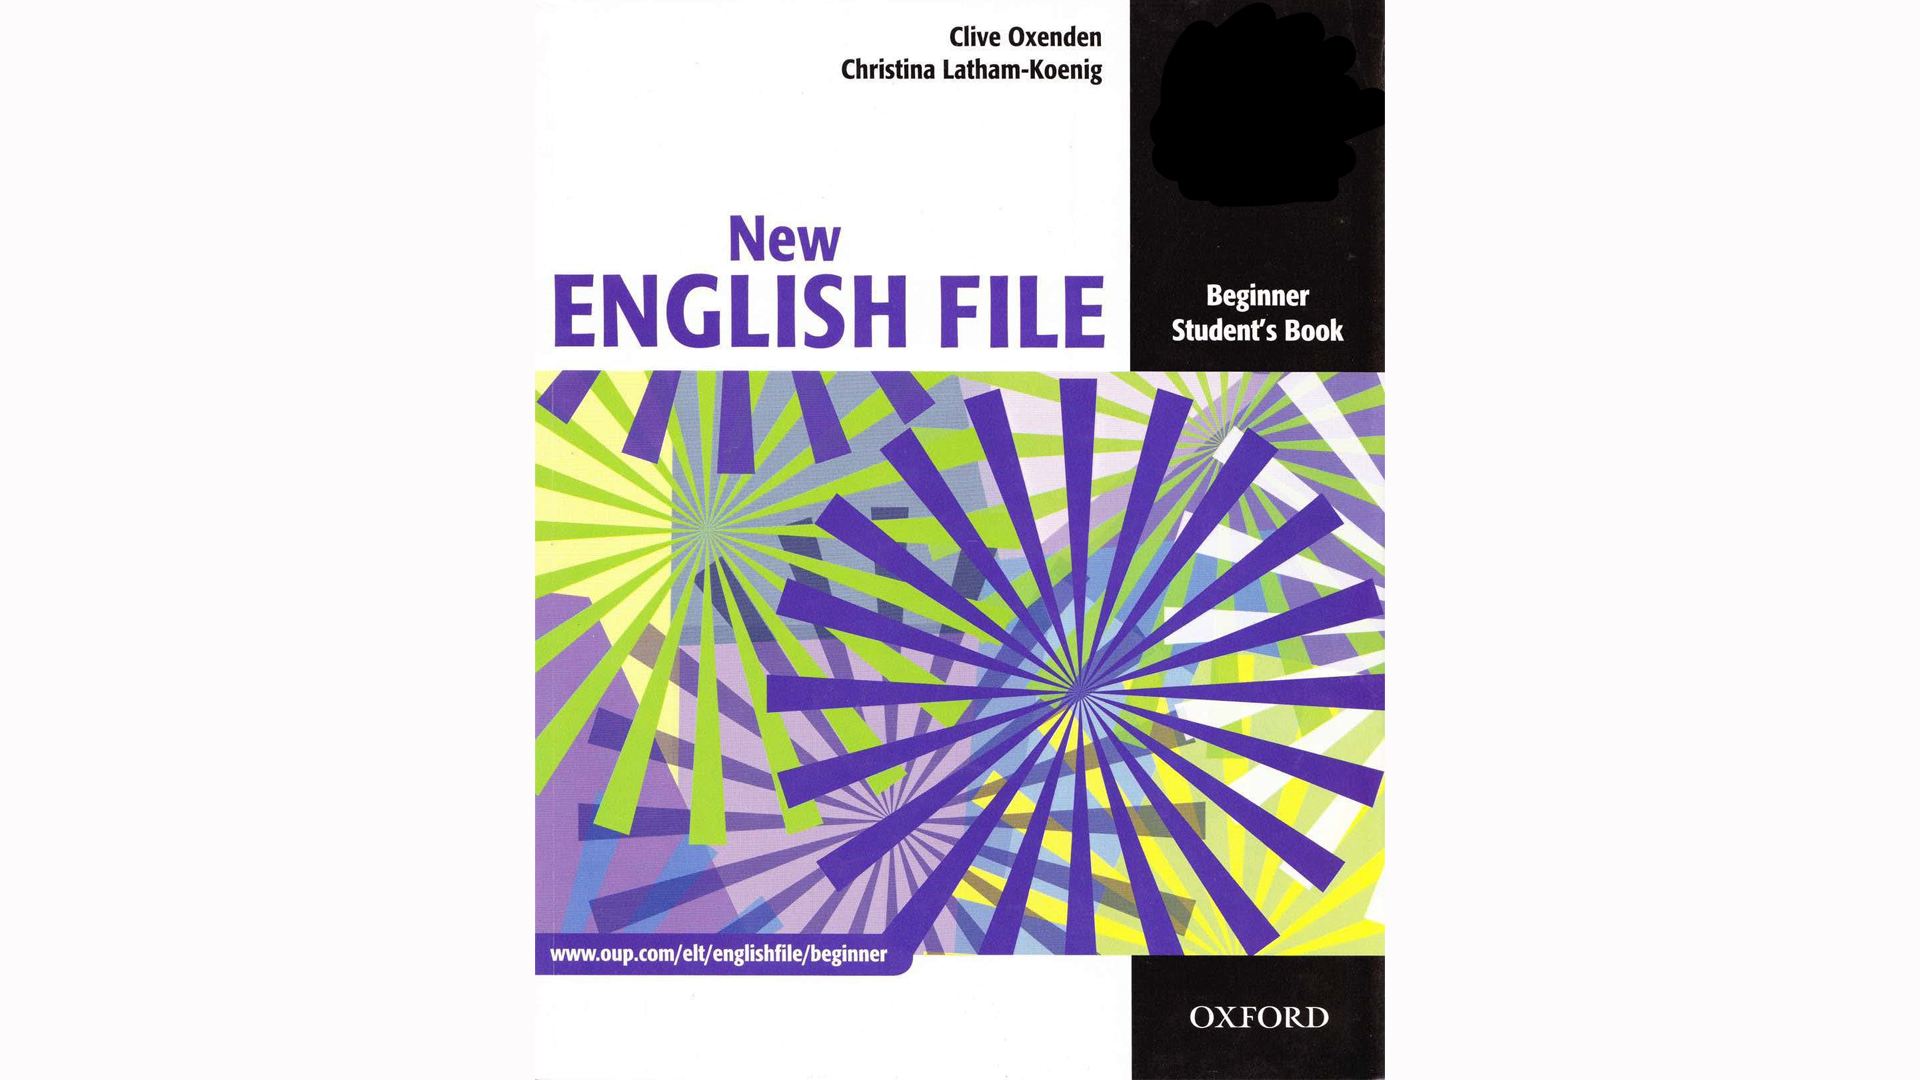 Giáo trình New English File của NXB Oxford